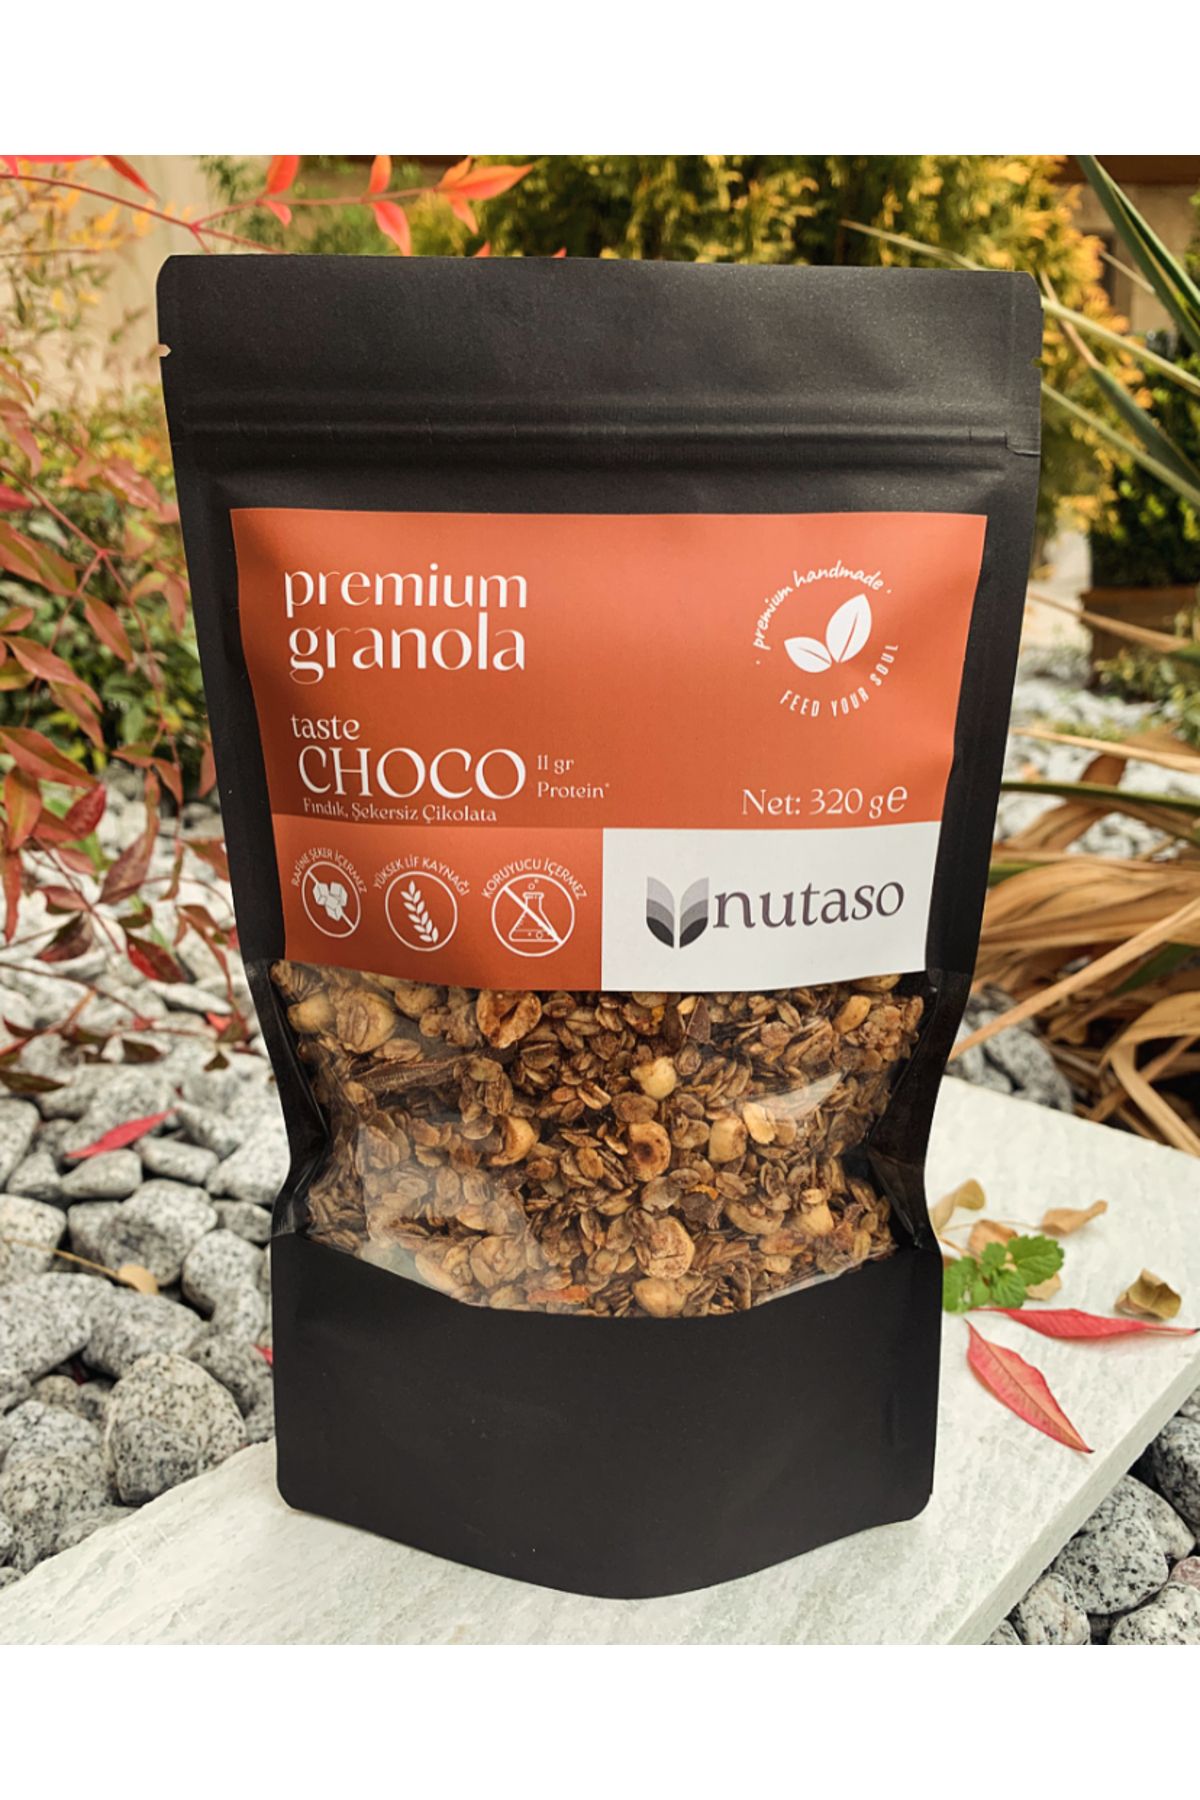 nutaso nutrition taste solutions Choco Granola (320 G)- Fındık, Şekersiz Çikolata, Portakal (ŞEKER İLAVESİ İÇERMEZ, KORUYUCU İÇERMEZ)